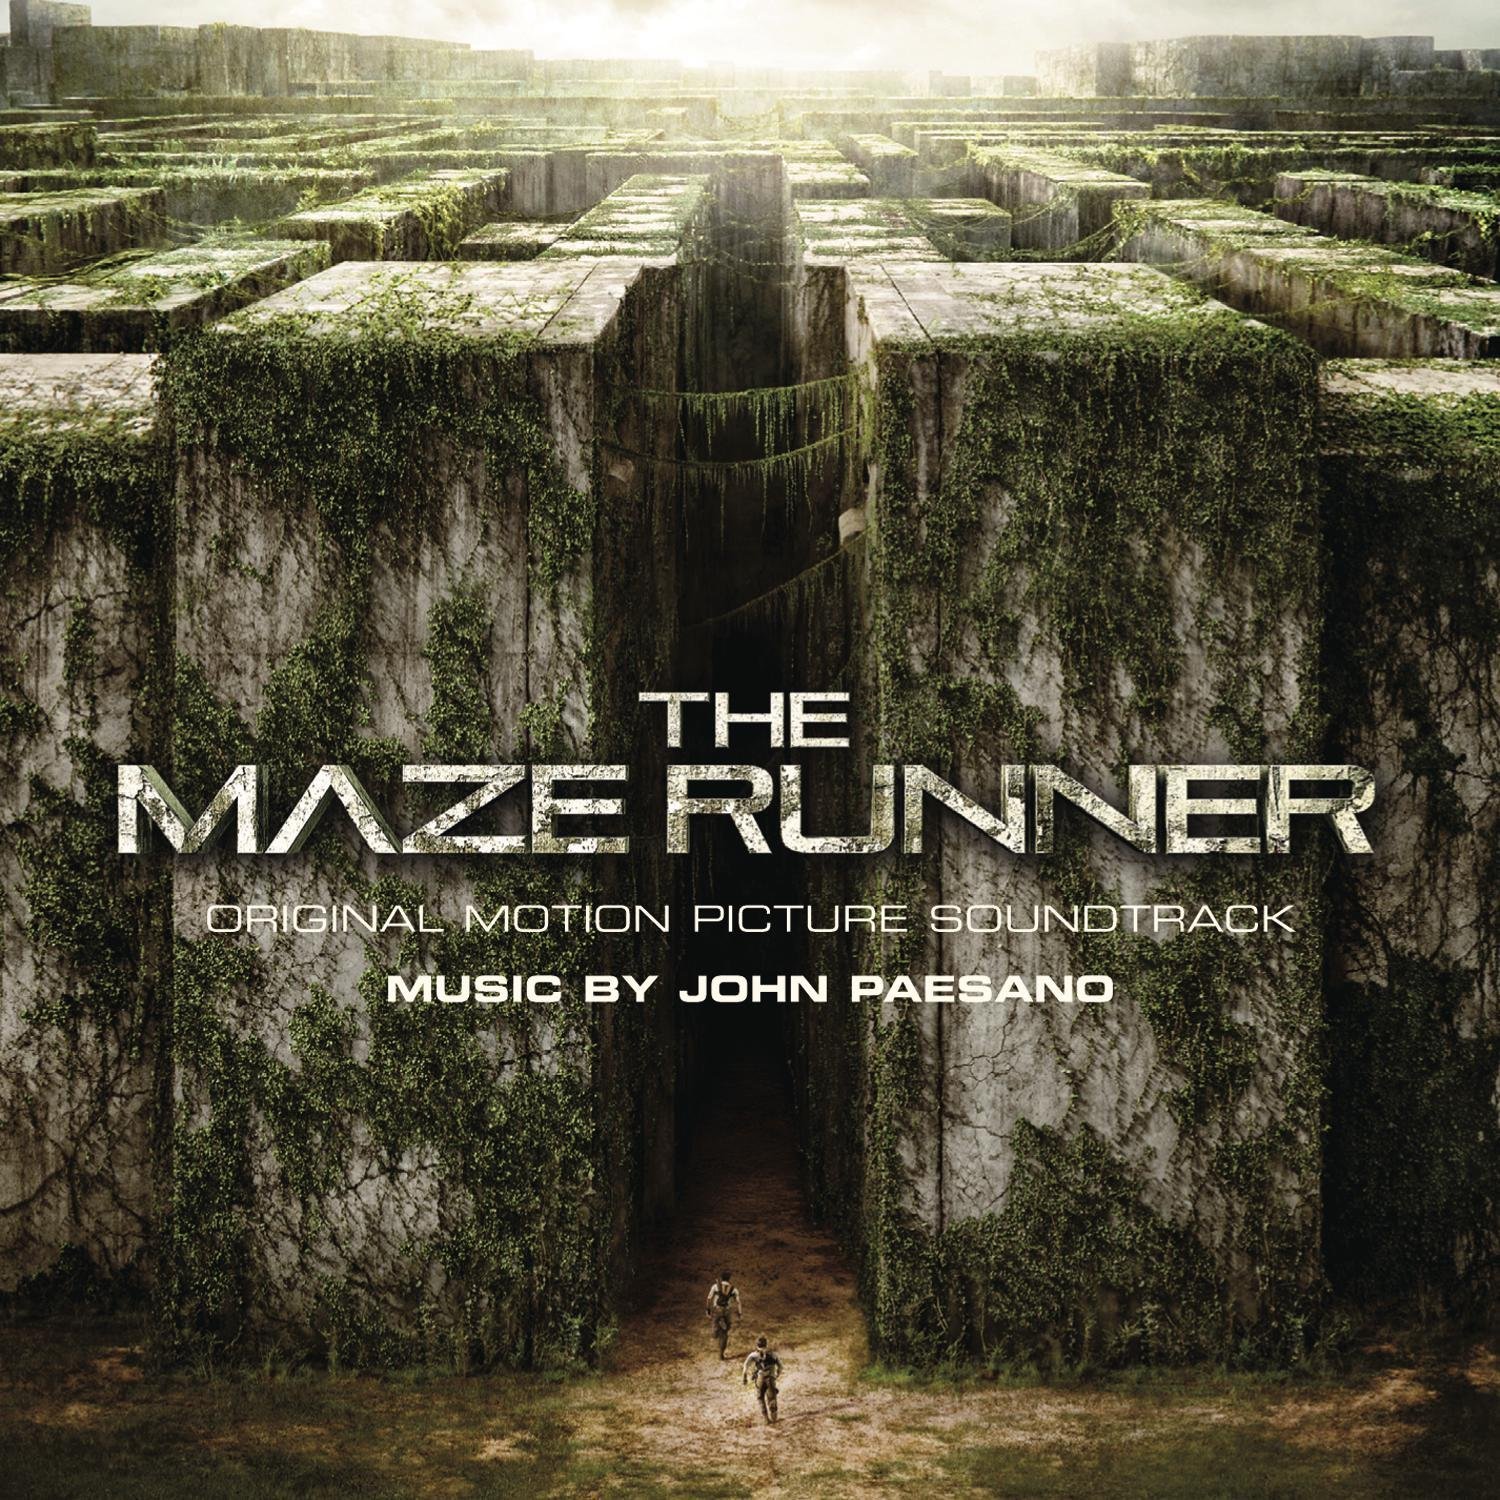 The_Maze_Runner_Soundtrack